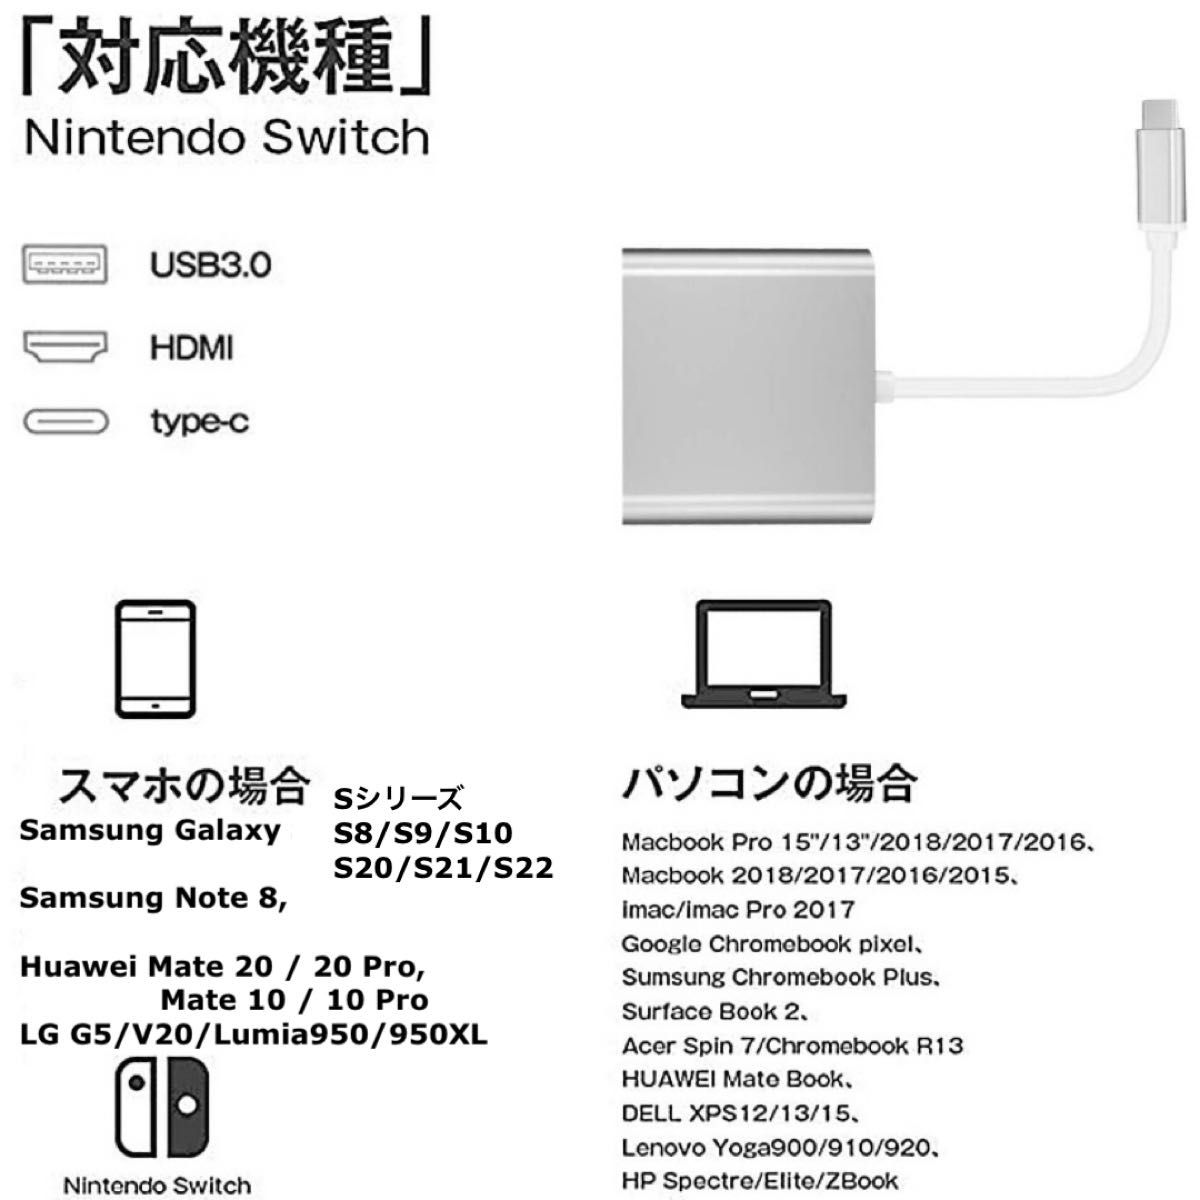 3点 Type-C 変換 アダプタ HDMI ケーブル 1.5m スマホ テレビ Switch スイッチ iPadPro 接続